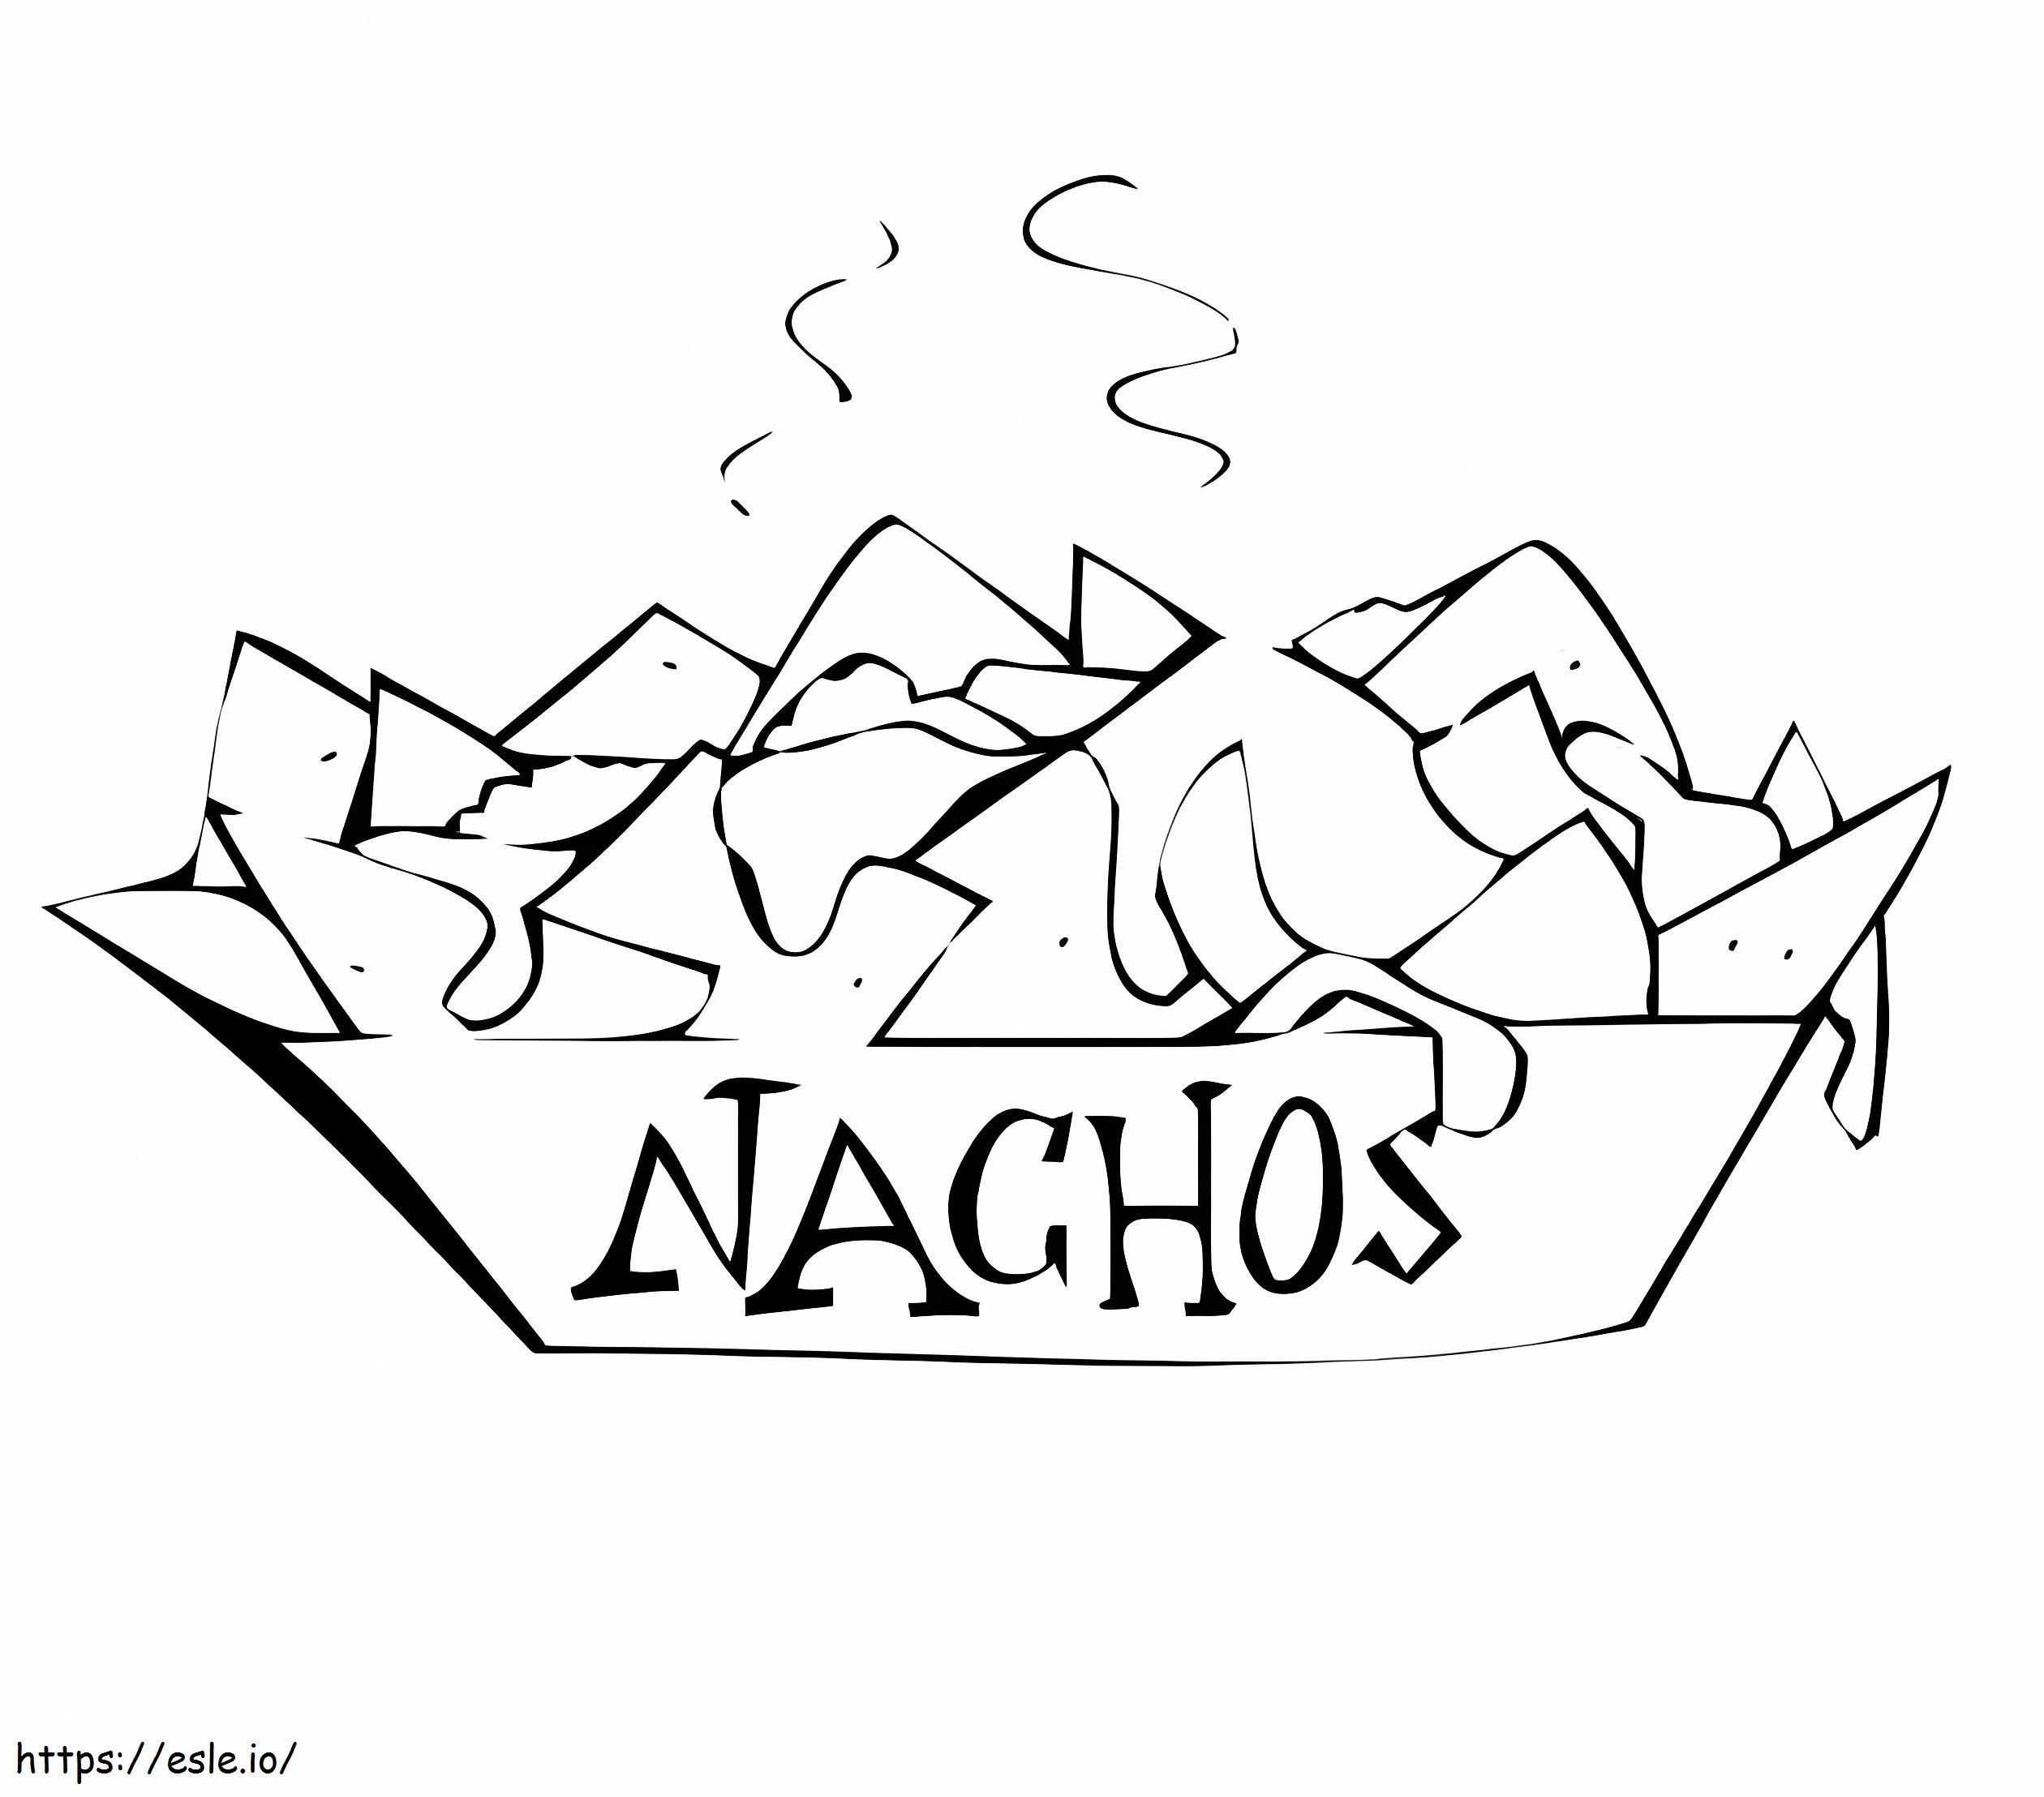 Mexican Nachos coloring page